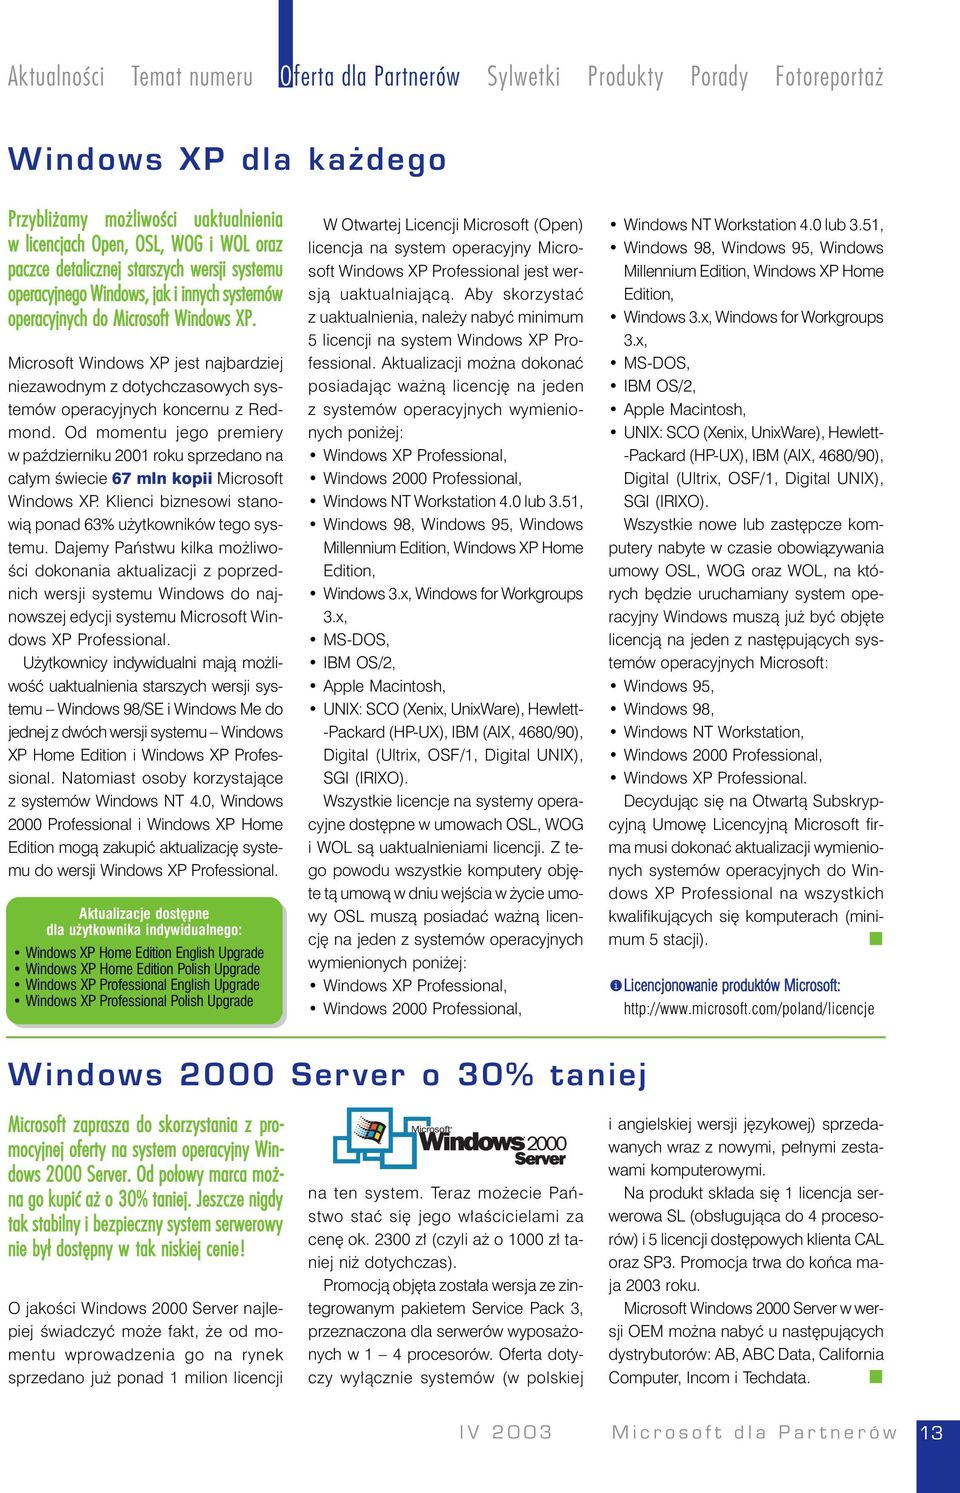 Microsoft Windows XP jest najbardziej niezawodnym z dotychczasowych systemów operacyjnych koncernu z Redmond.